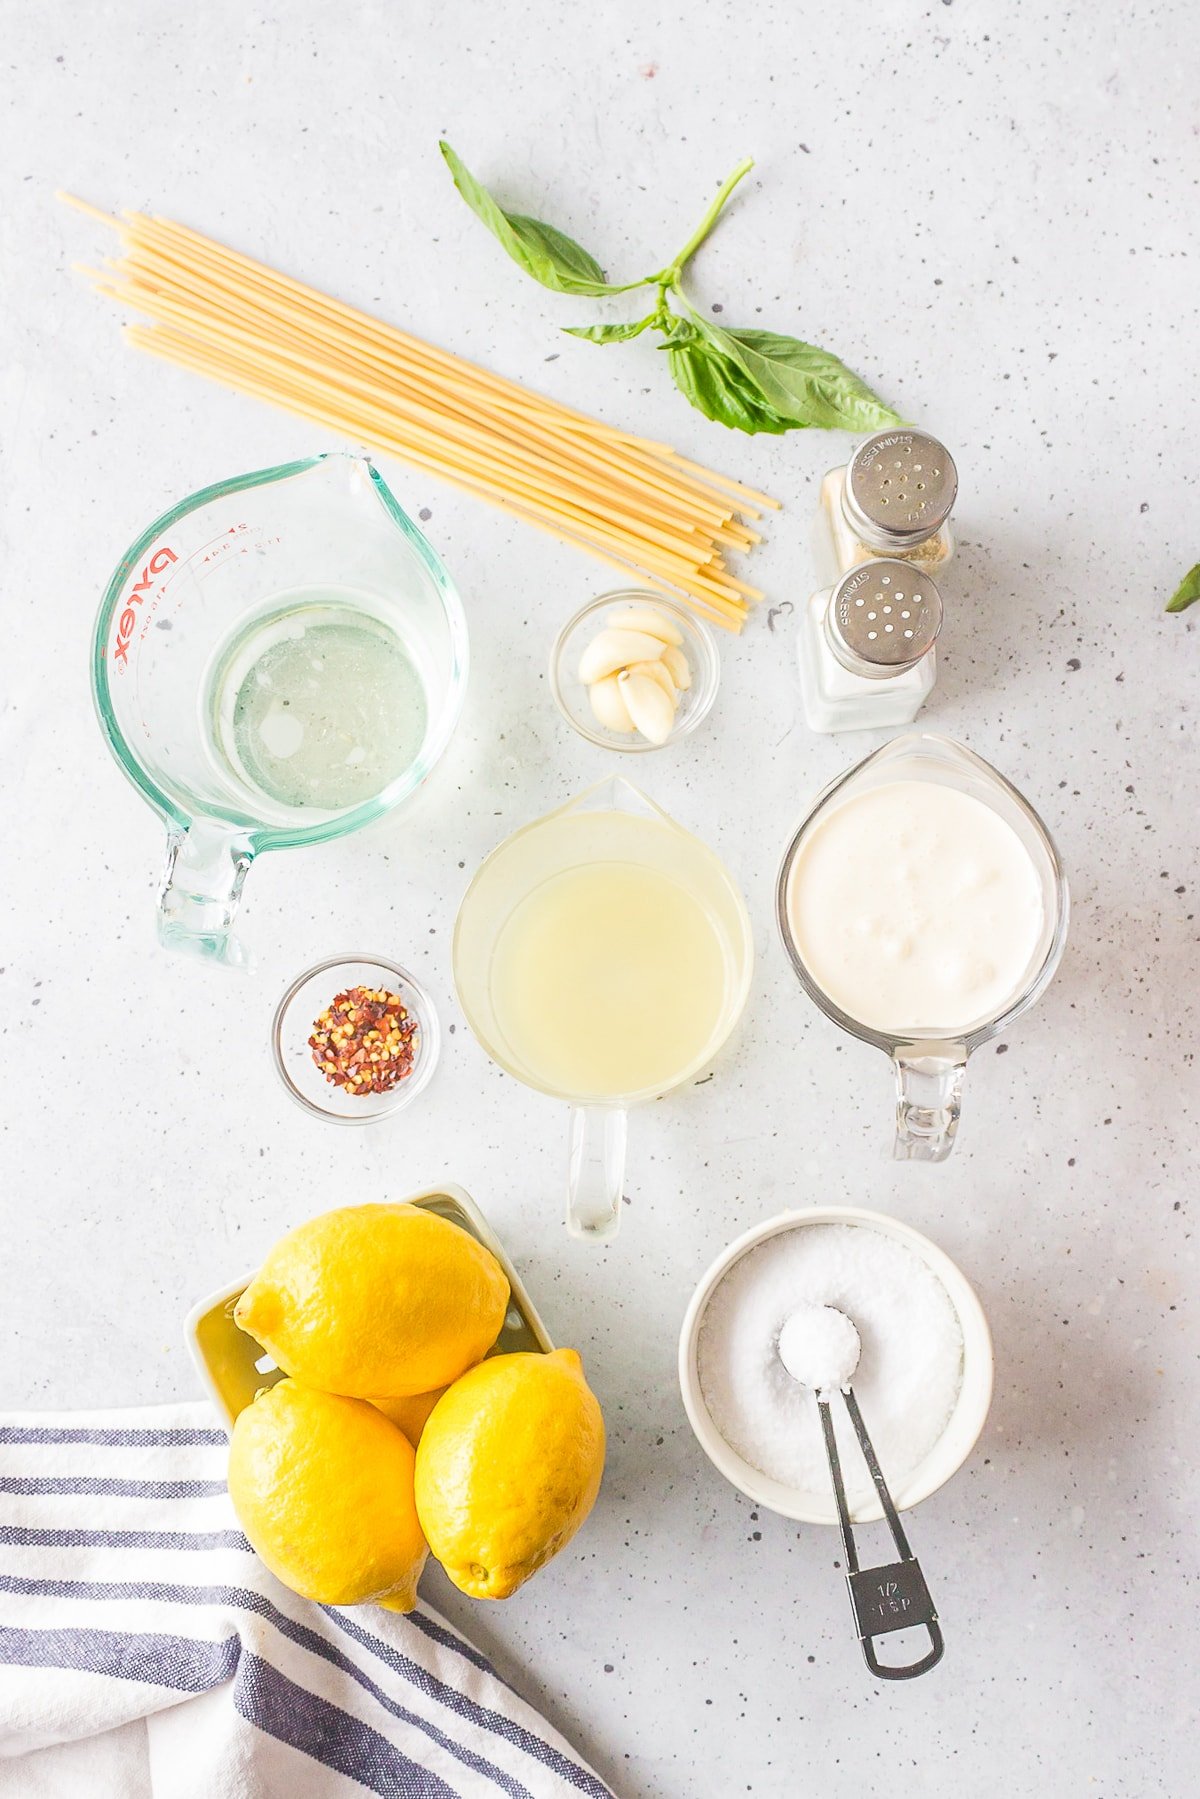 ingredients needed to make lemon garlic pasta